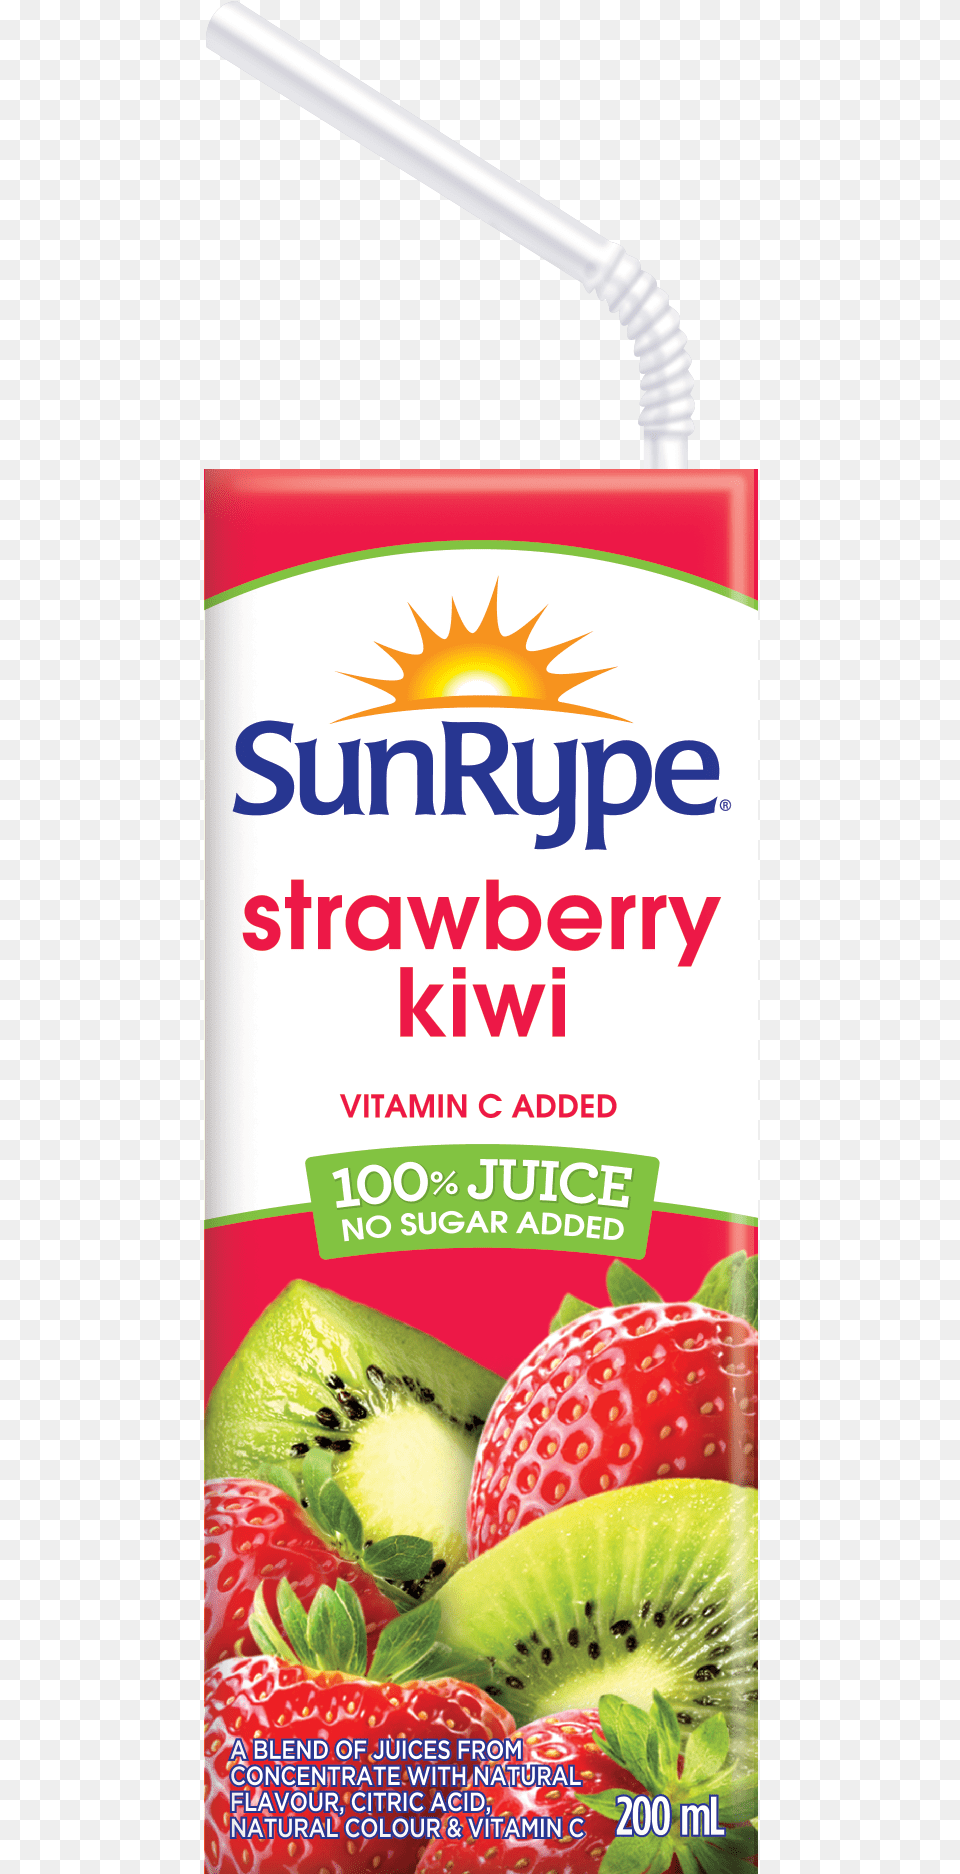 Strawberry Kiwi Strawberry Kiwi Juice Box, Food, Fruit, Plant, Produce Free Png